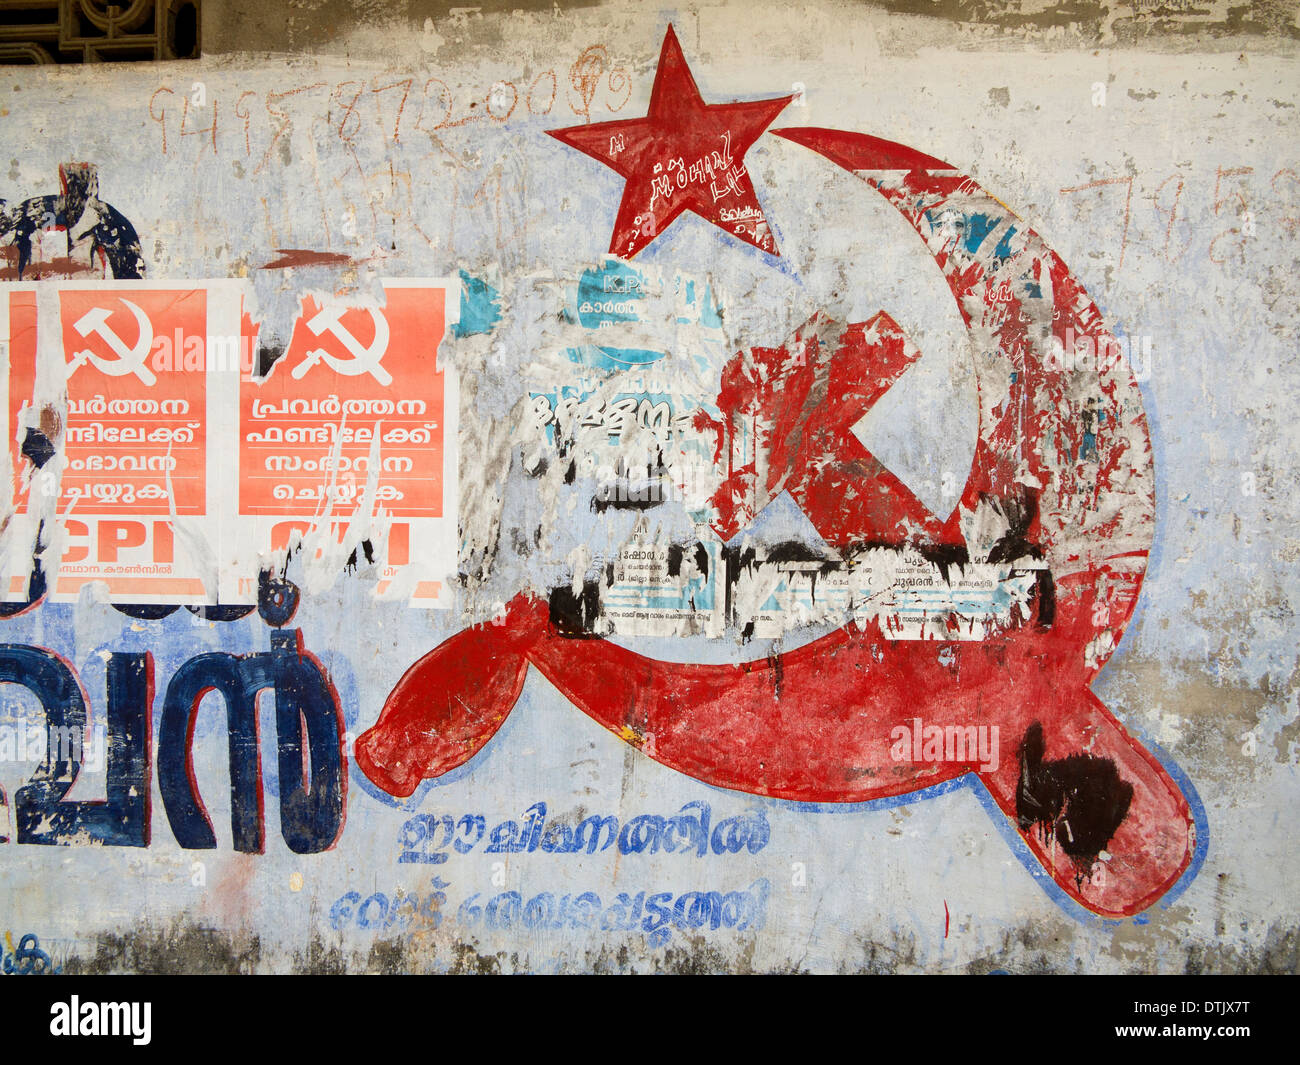 India Kerala, politica, il Partito Comunista falce e martello simbolo oscurato parte sulla parete Foto Stock